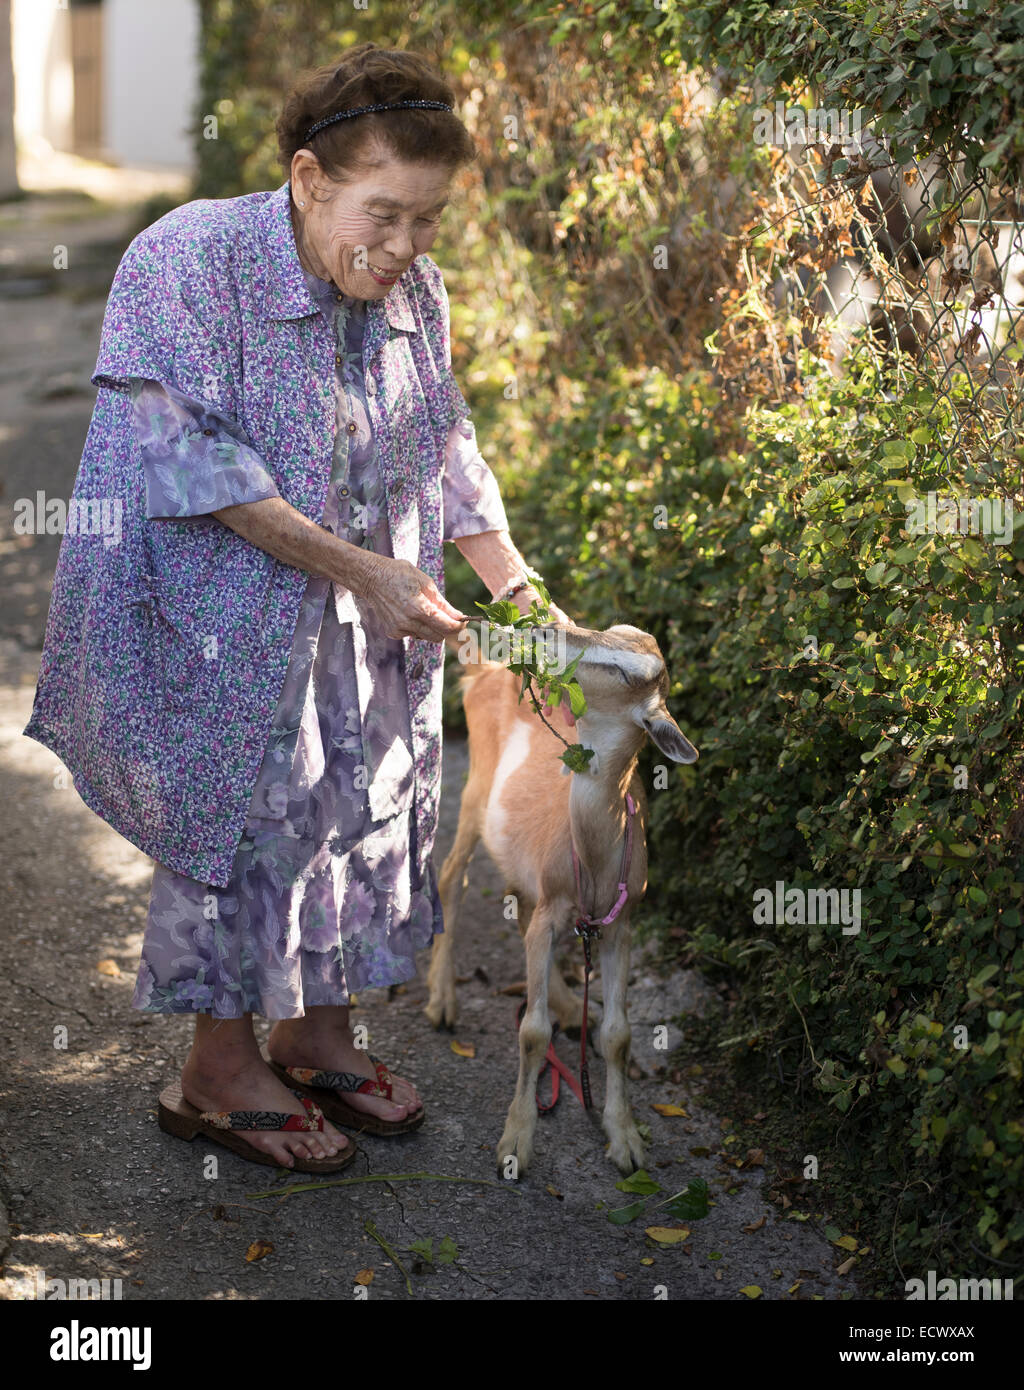 Shizuko Hanashiro 98 años con una cabra en cerámica Tsuboya distrito de la ciudad de Naha, Okinawa. Foto de stock